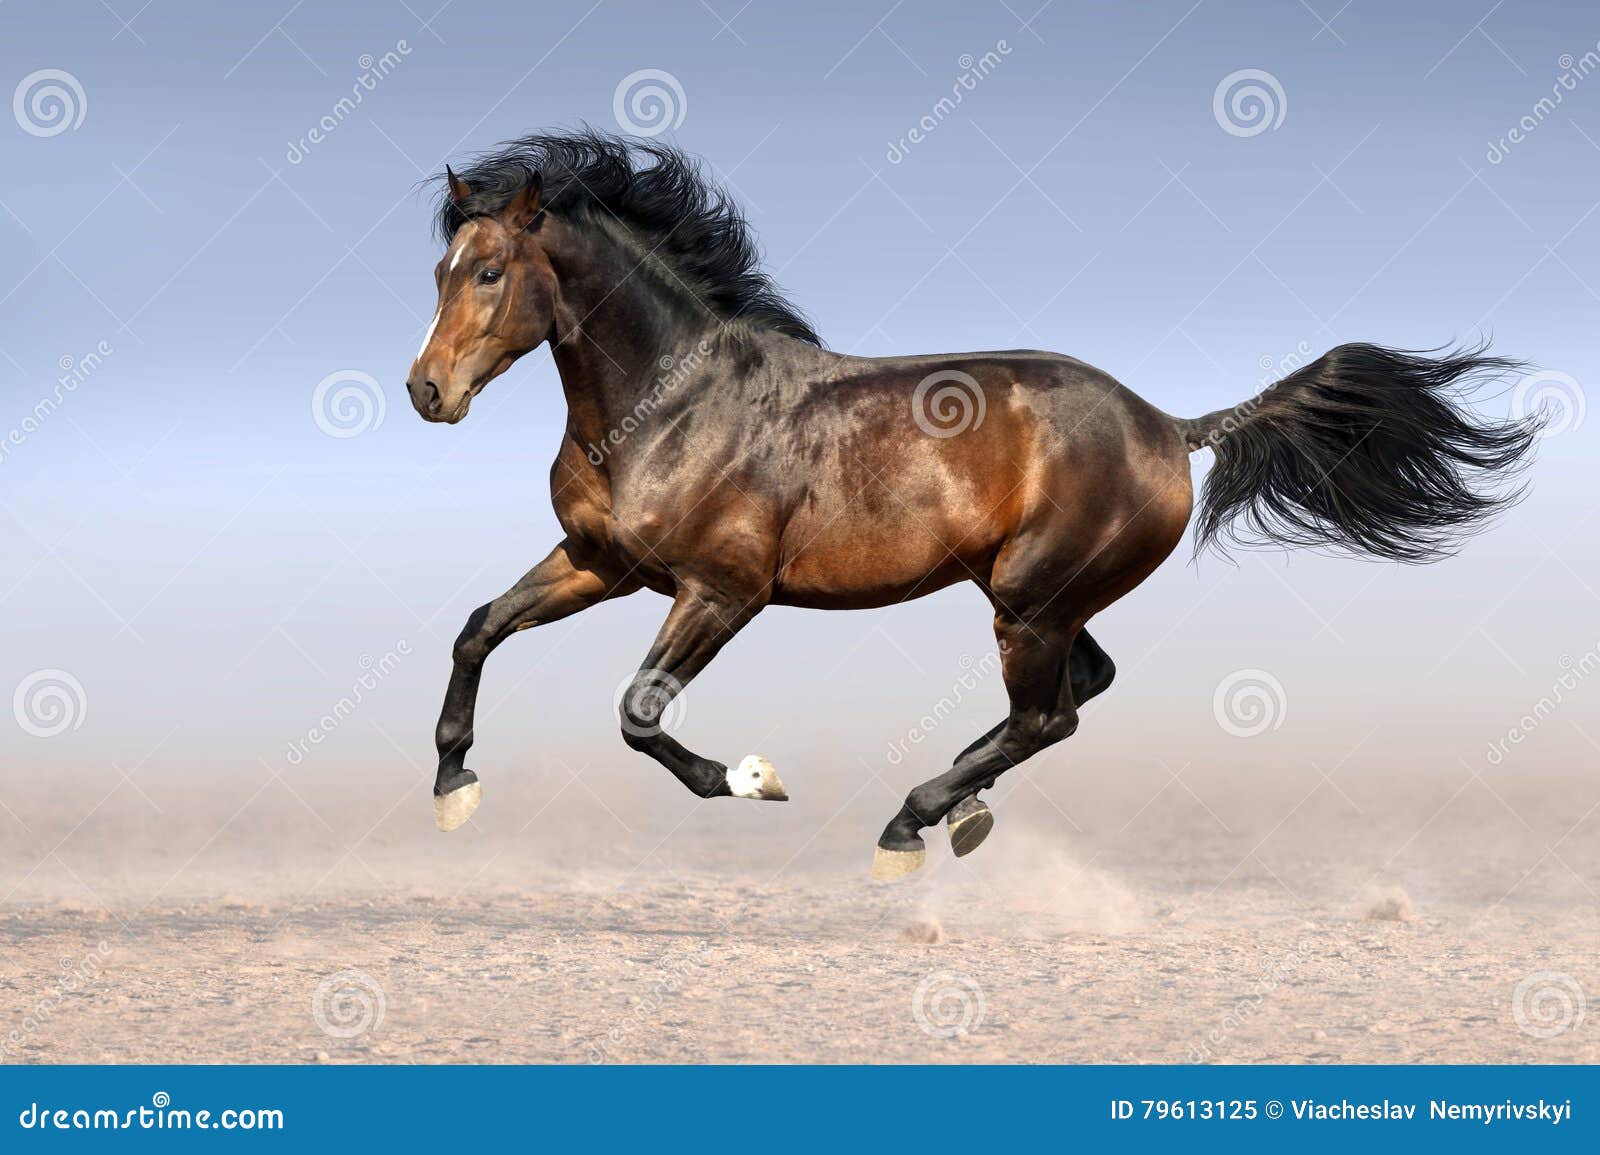 Лошадь бежит фронтально